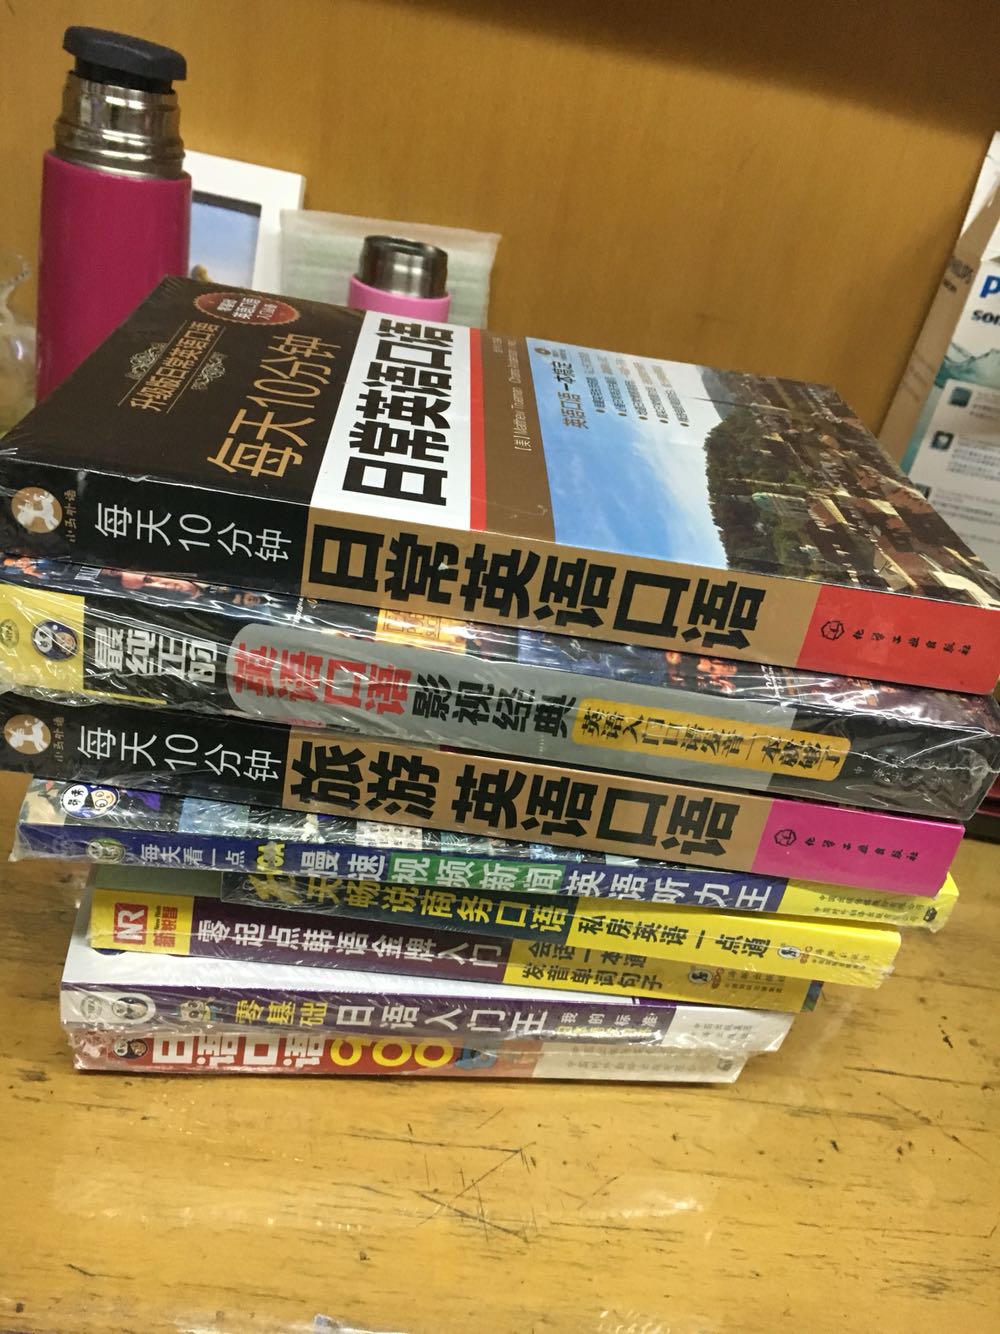 满200减80的活动，我买了很多英语书，韩语书，日语书，有光盘，买来有兴趣的时候看看，觉得荒废了大学时光，没有学习英语，后悔啊，快递那是相当的快，快递小哥态度非常非常好，很满意